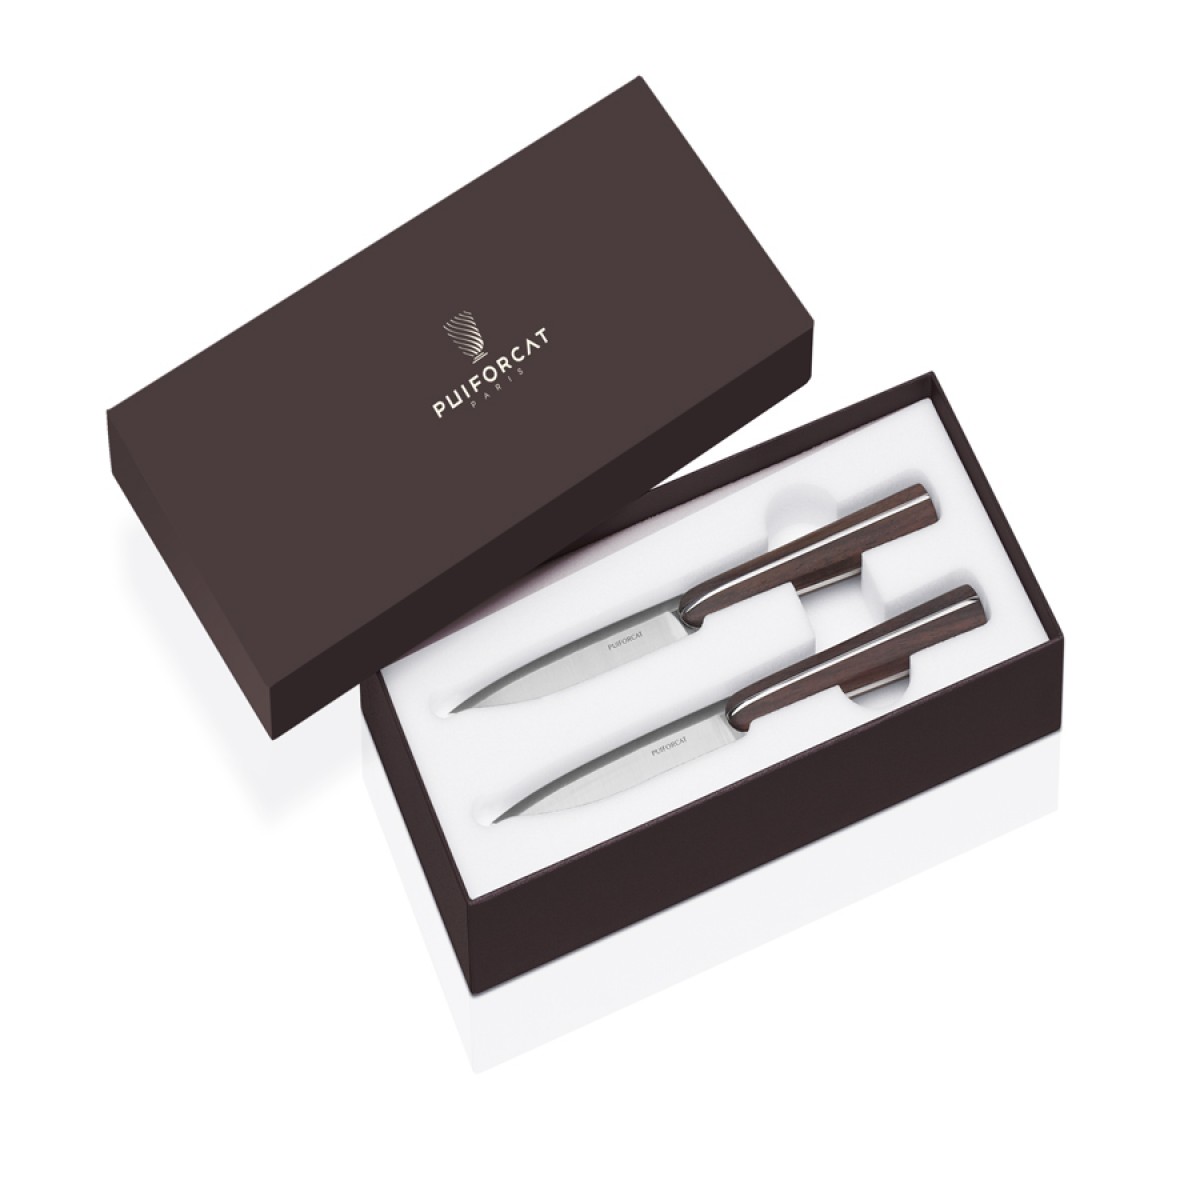 The Silversmith Knives - 2 Paring Knives Box | Highlight image